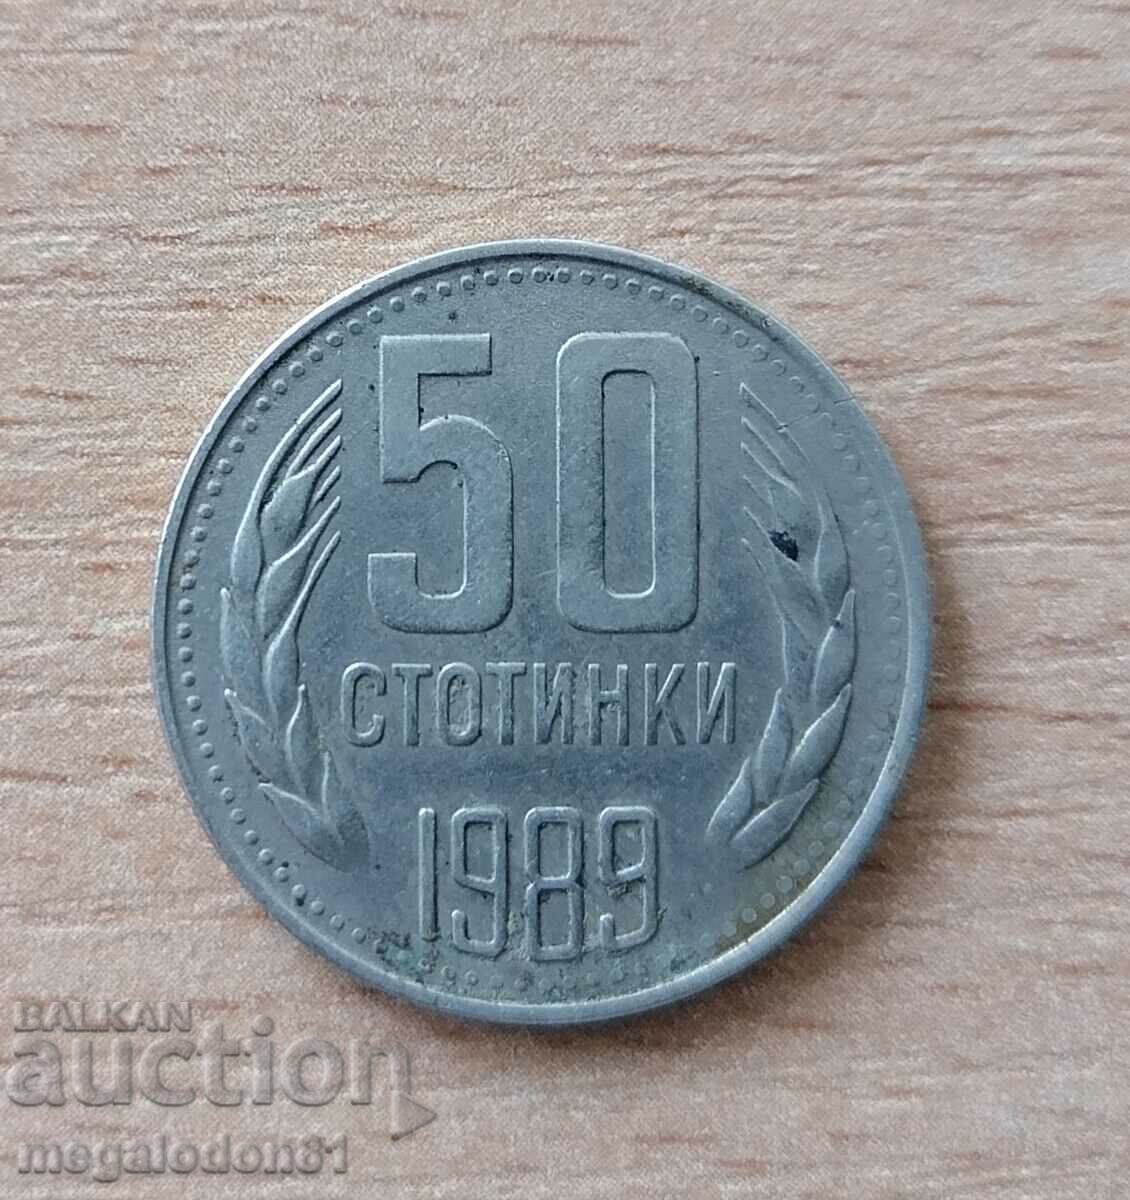 Bulgaria - 50 de cenți 1989, bandă netedă